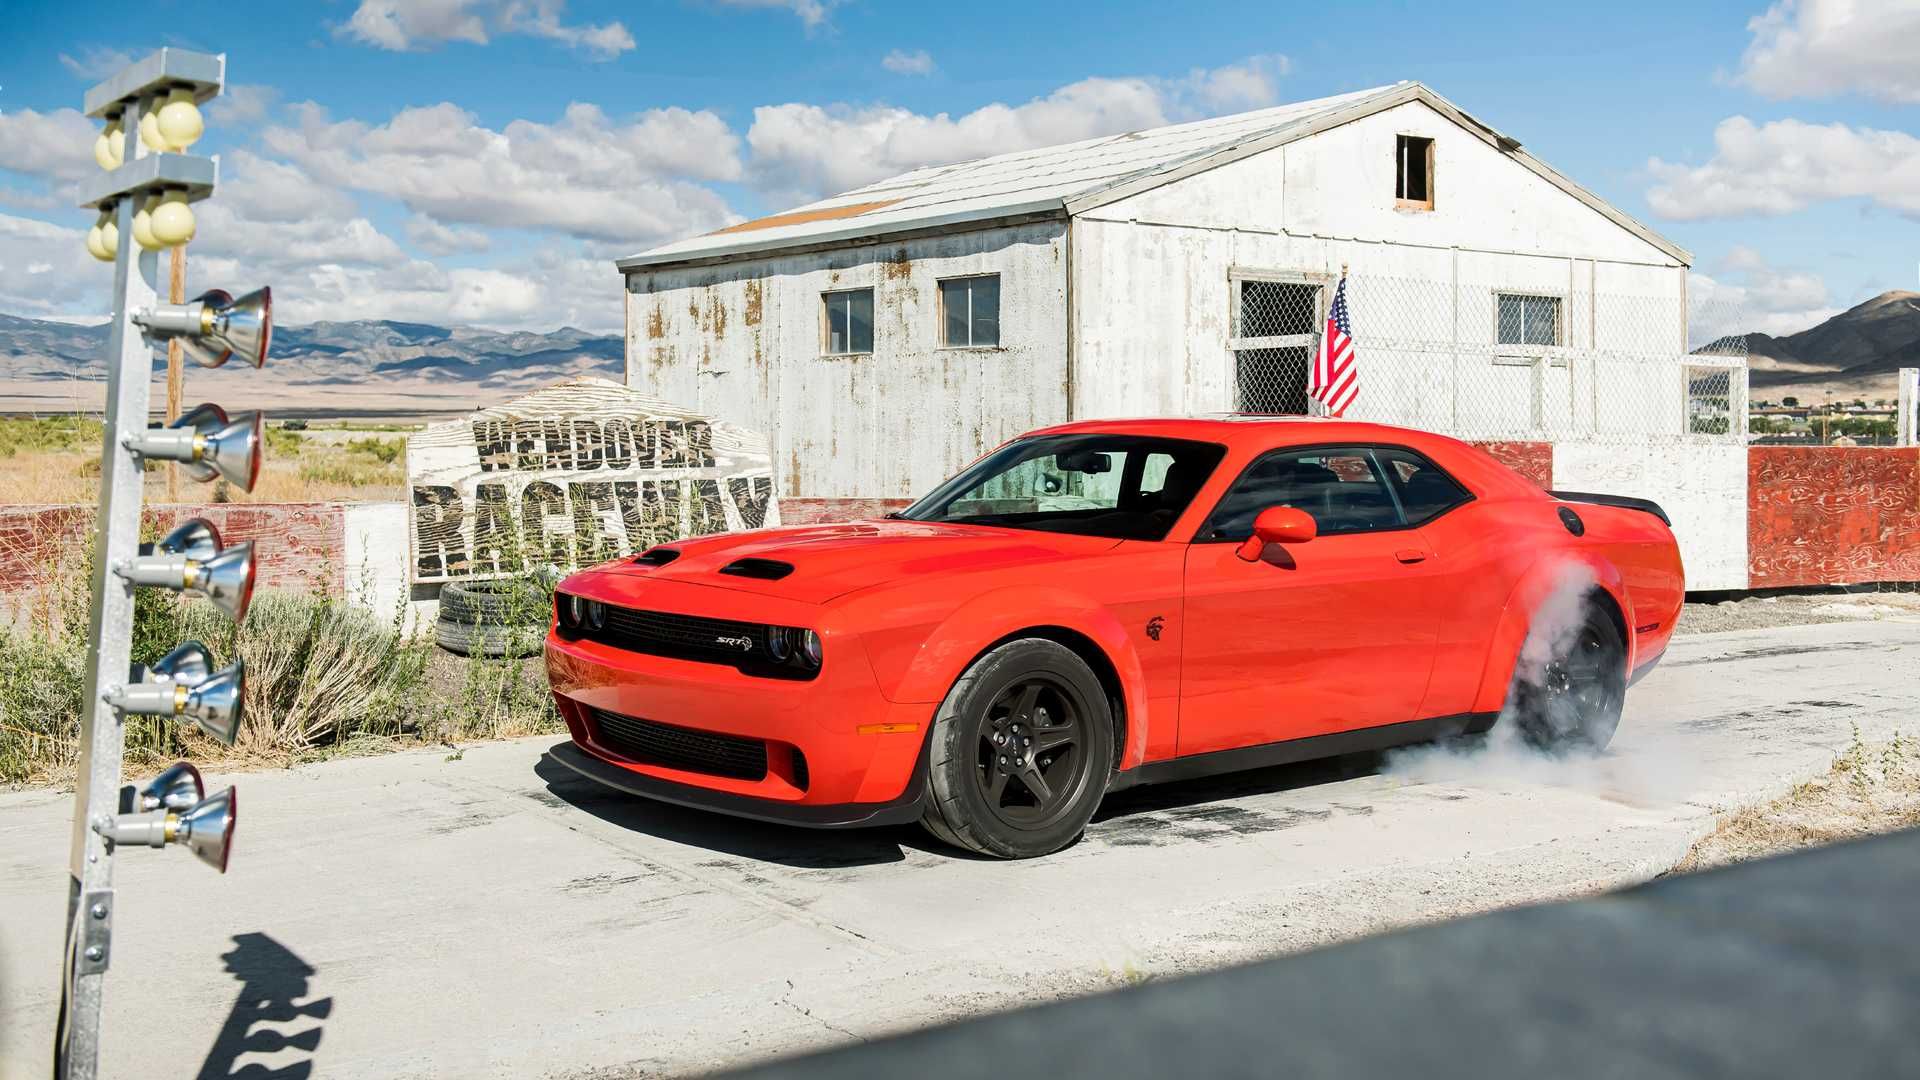 خودرو دوج چلنجر اس آر تی سوپر استاک / Dodge Challenger SRT Super Stock قرمز در کنار خانه